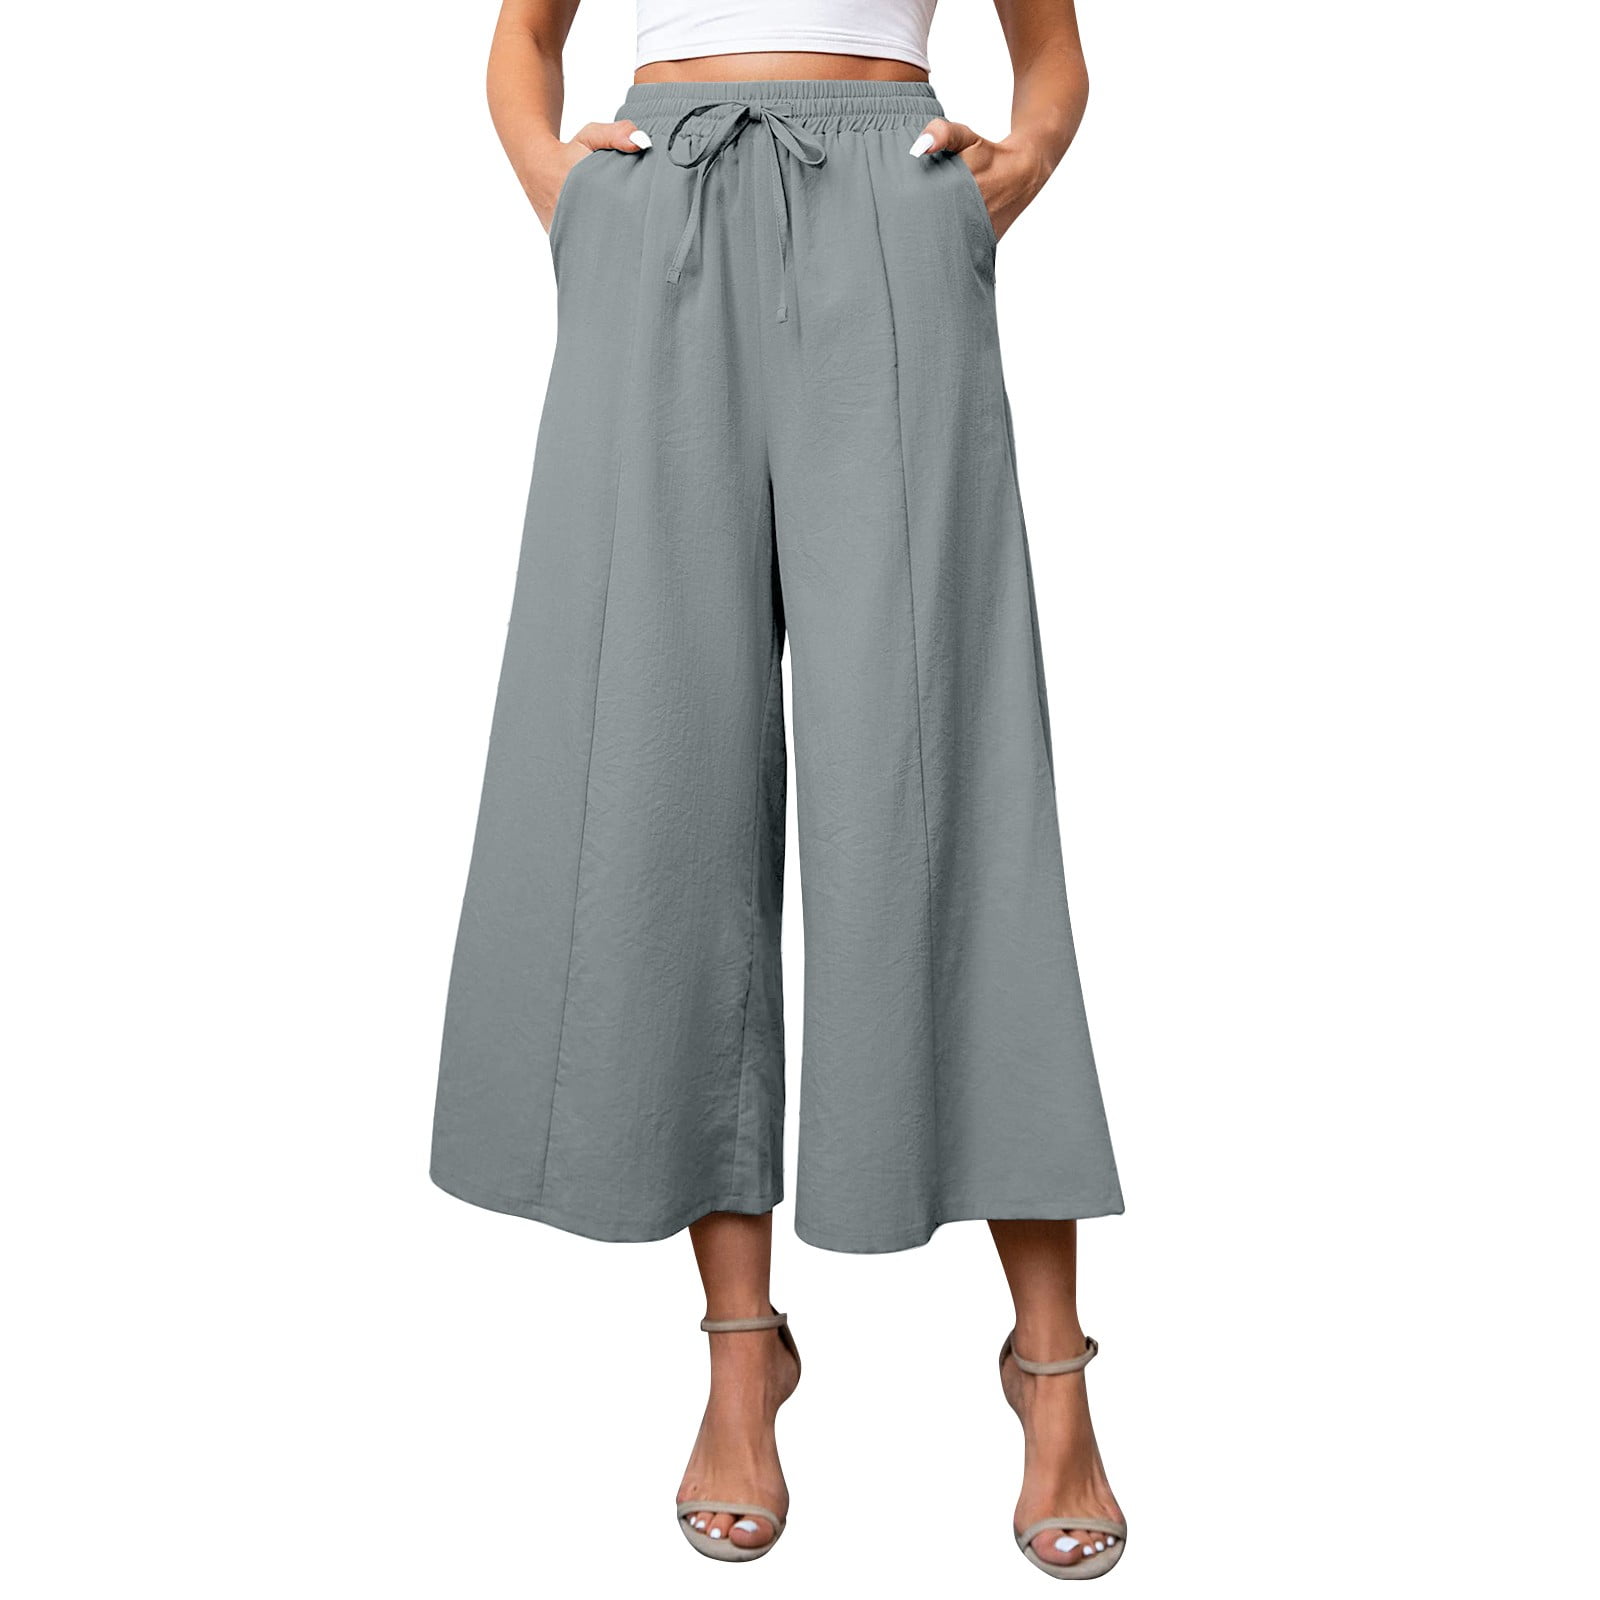  MIASHUI Women Casual Loose Long Pants Fashion Beach